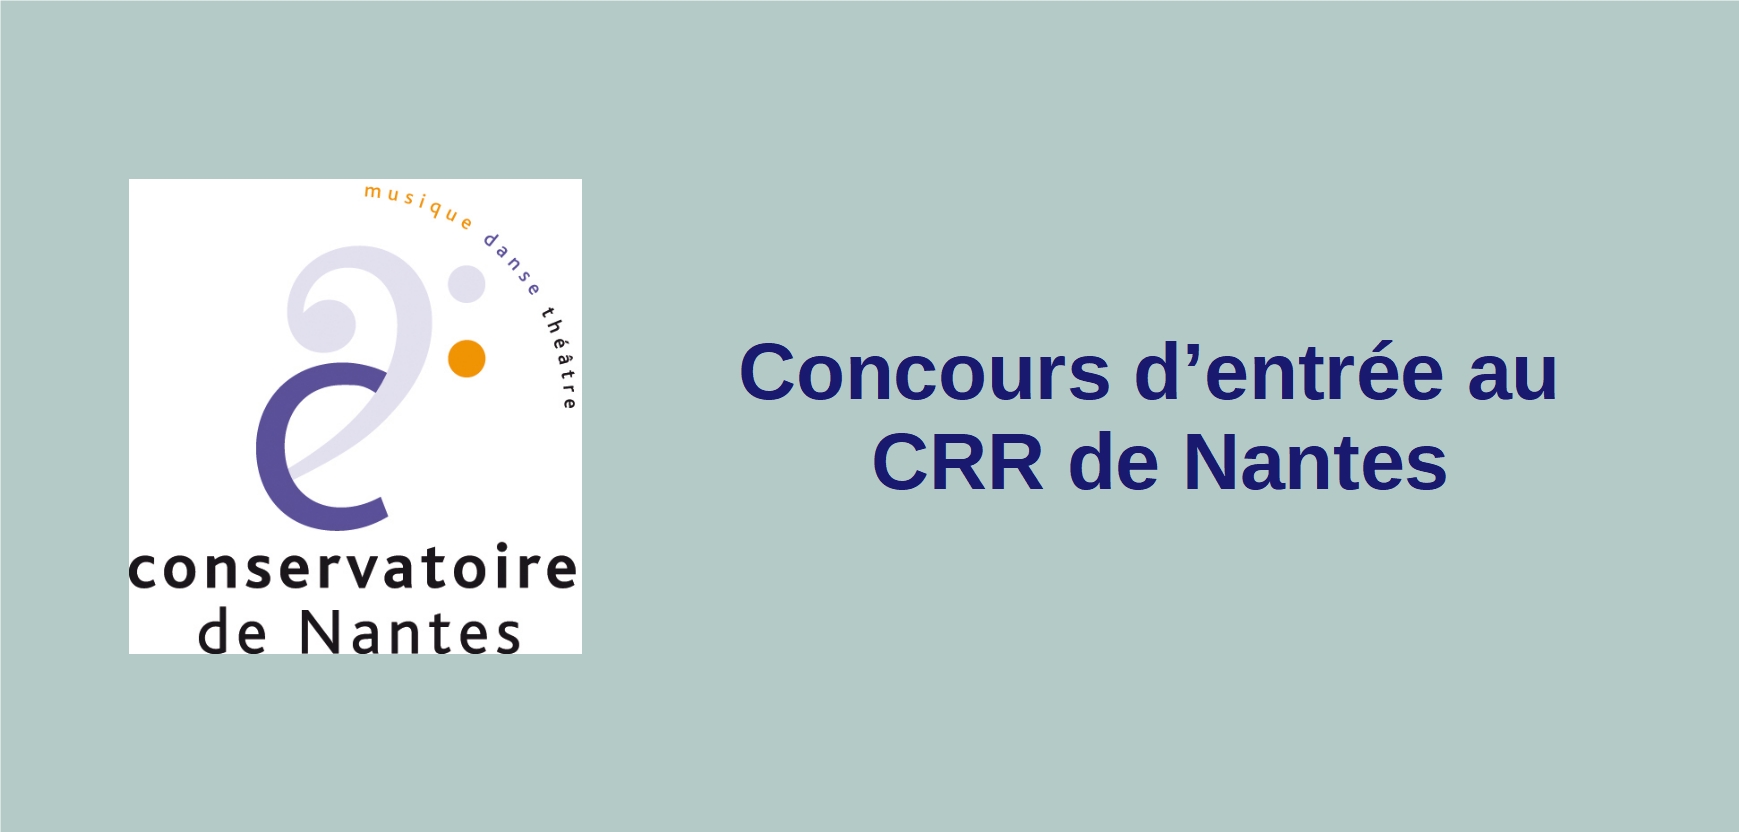 Concours d'entrée au CRR de Nantes